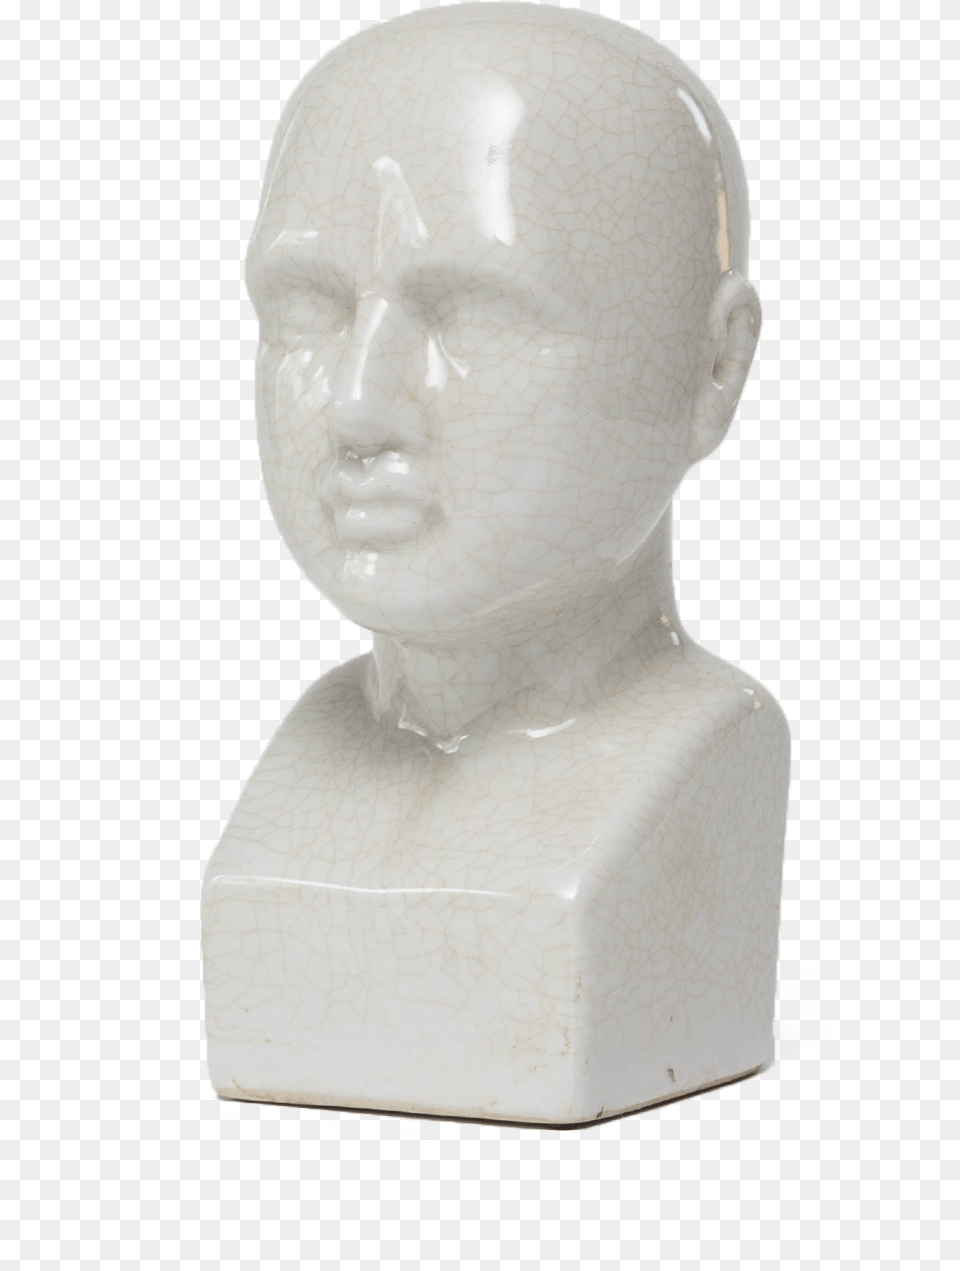 Vaporwave Statue Sculpture Head Artifact, Art, Baby, Person, Porcelain Free Transparent Png